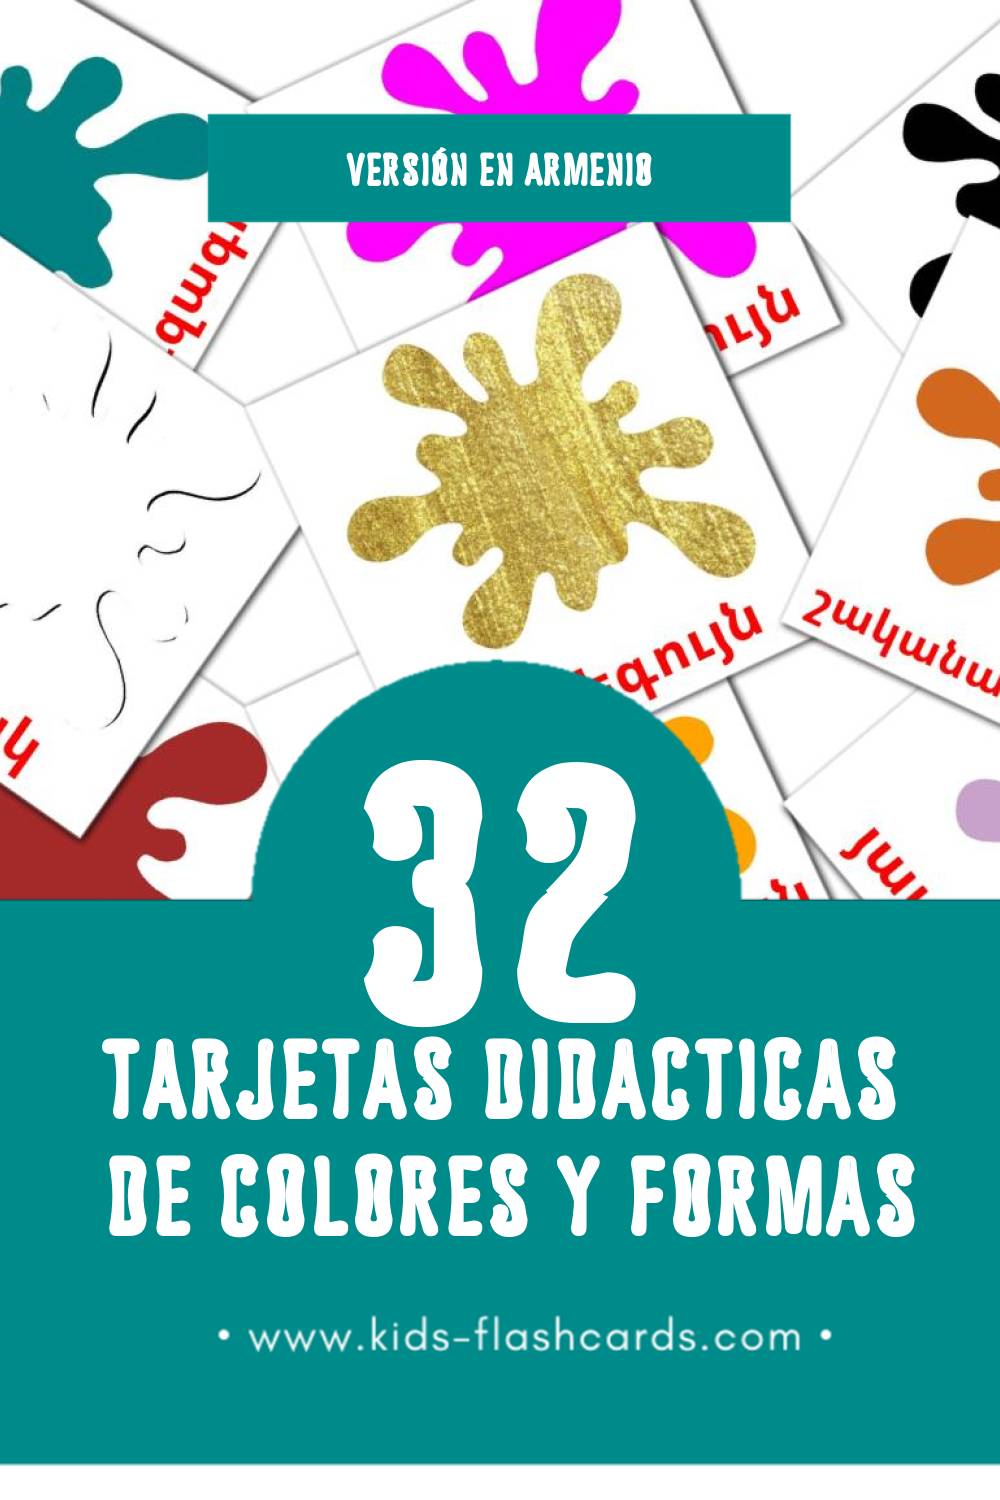 Tarjetas visuales de  գույներն ու ձևերը para niños pequeños (32 tarjetas en Armenio)